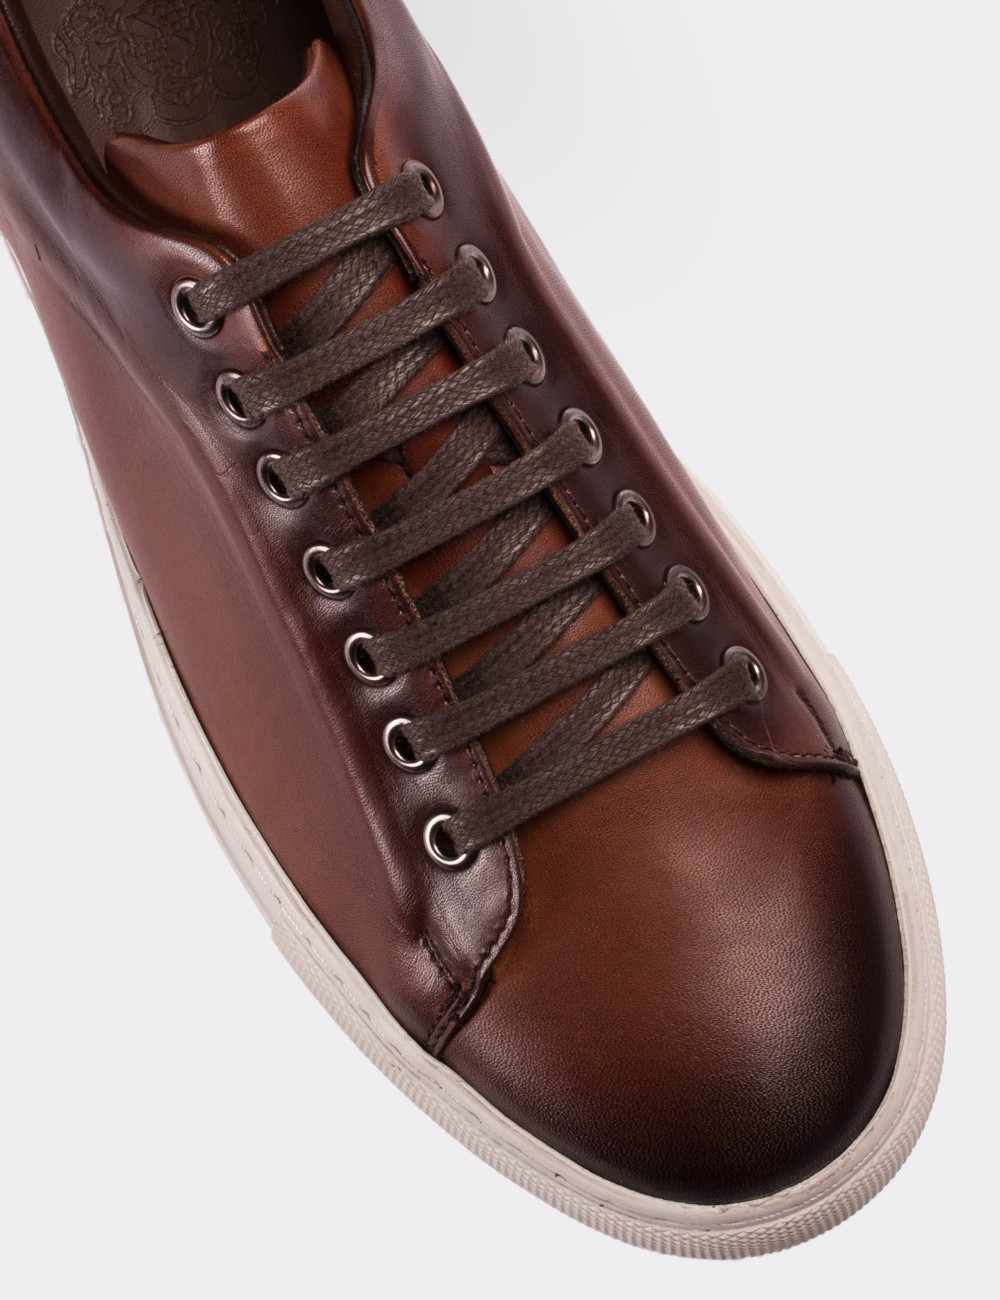 Brown Leather Sneakers - Deery